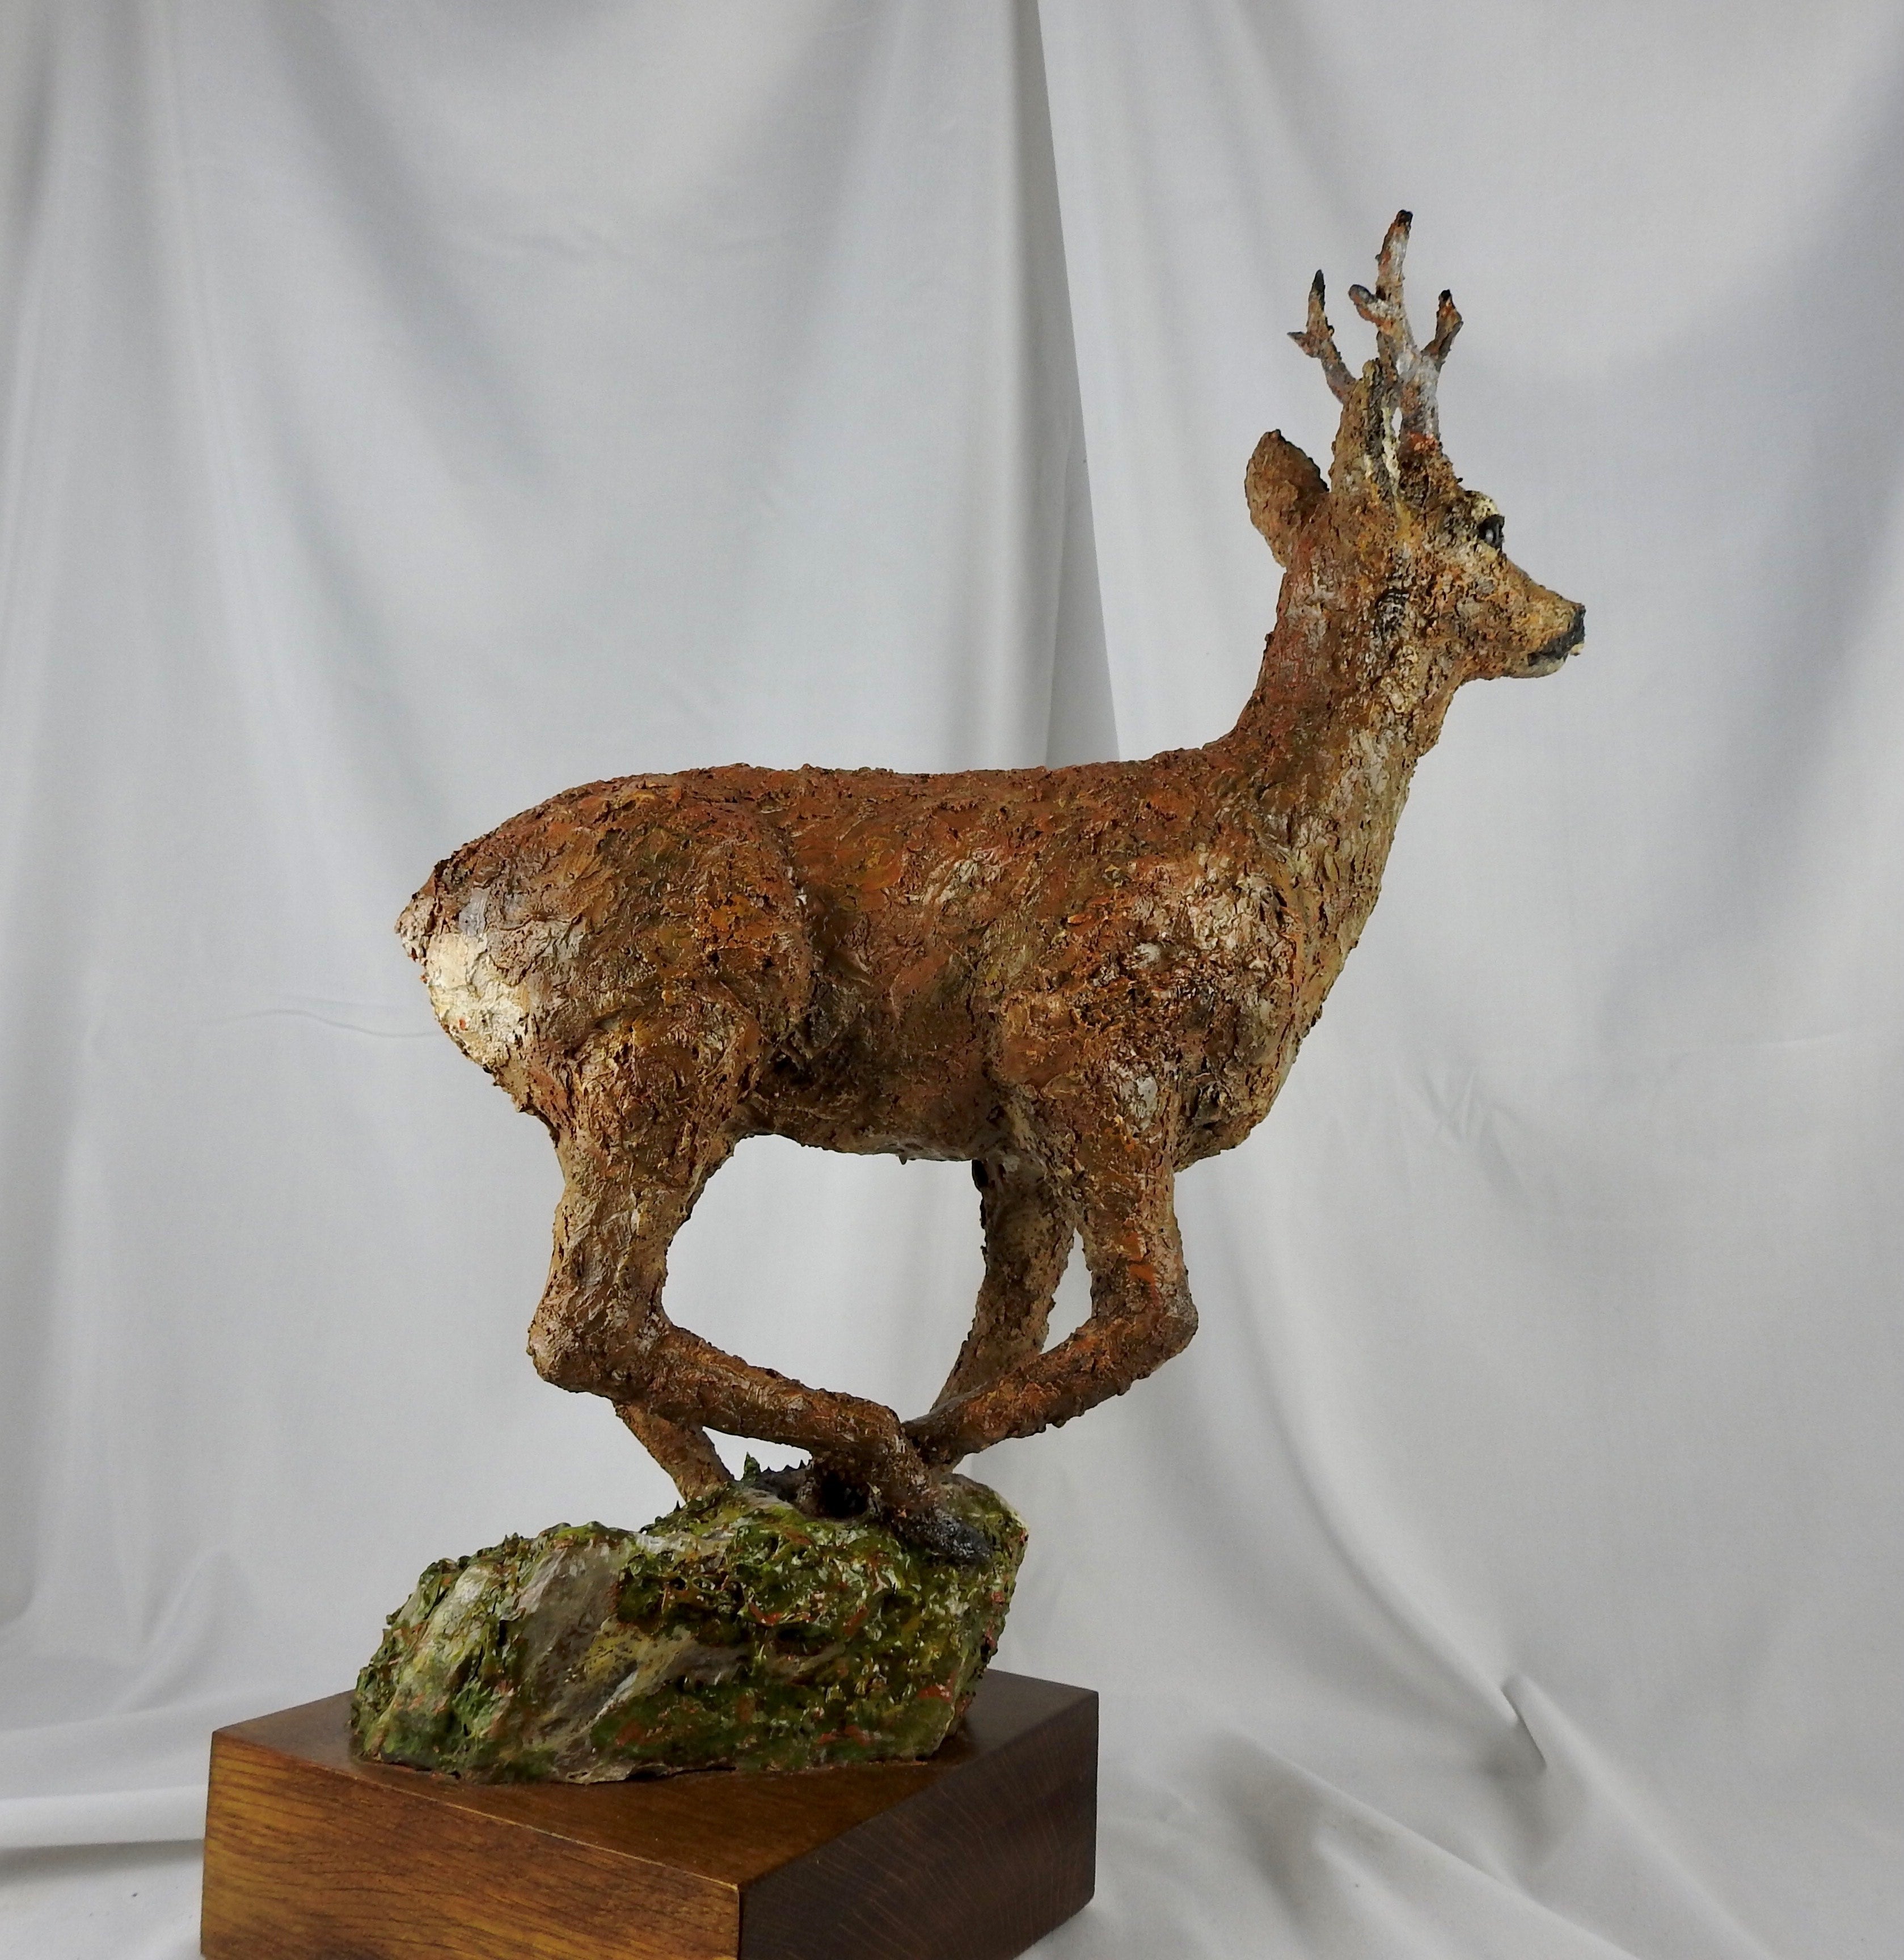 'Running Roe Deer' Wooden Sculpture by Martyn Bednarczuk